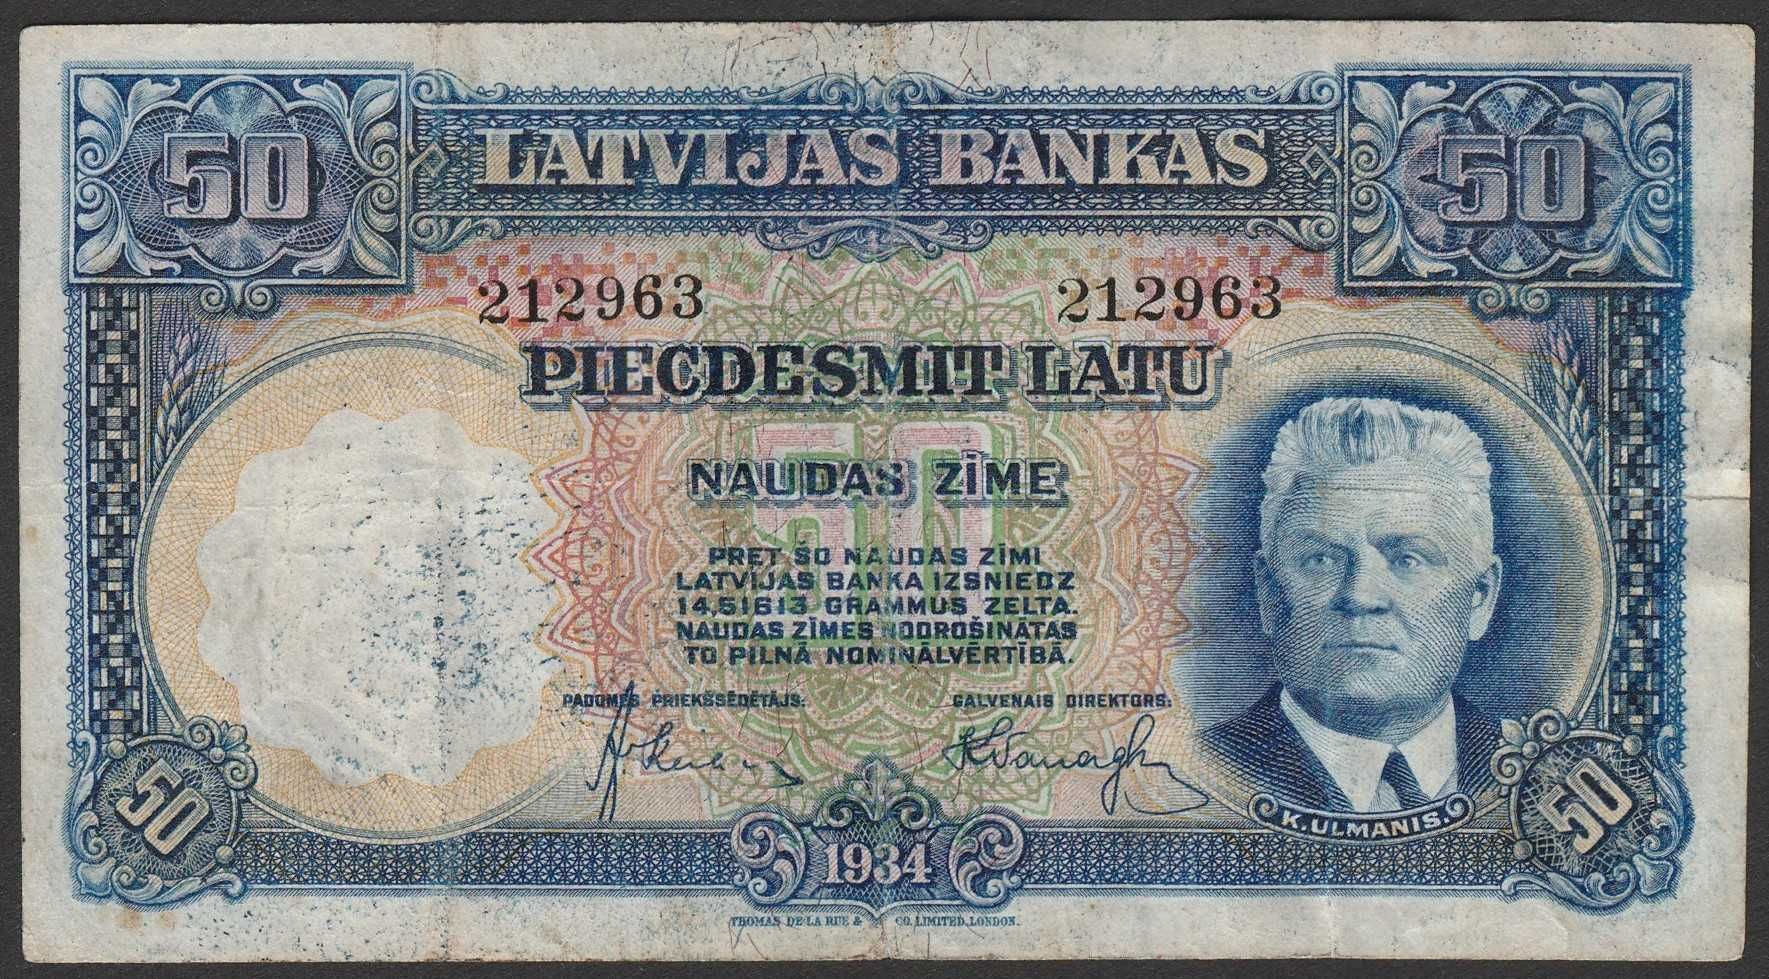 Łotwa 50 latu 1934 - Karlis Ulmanis